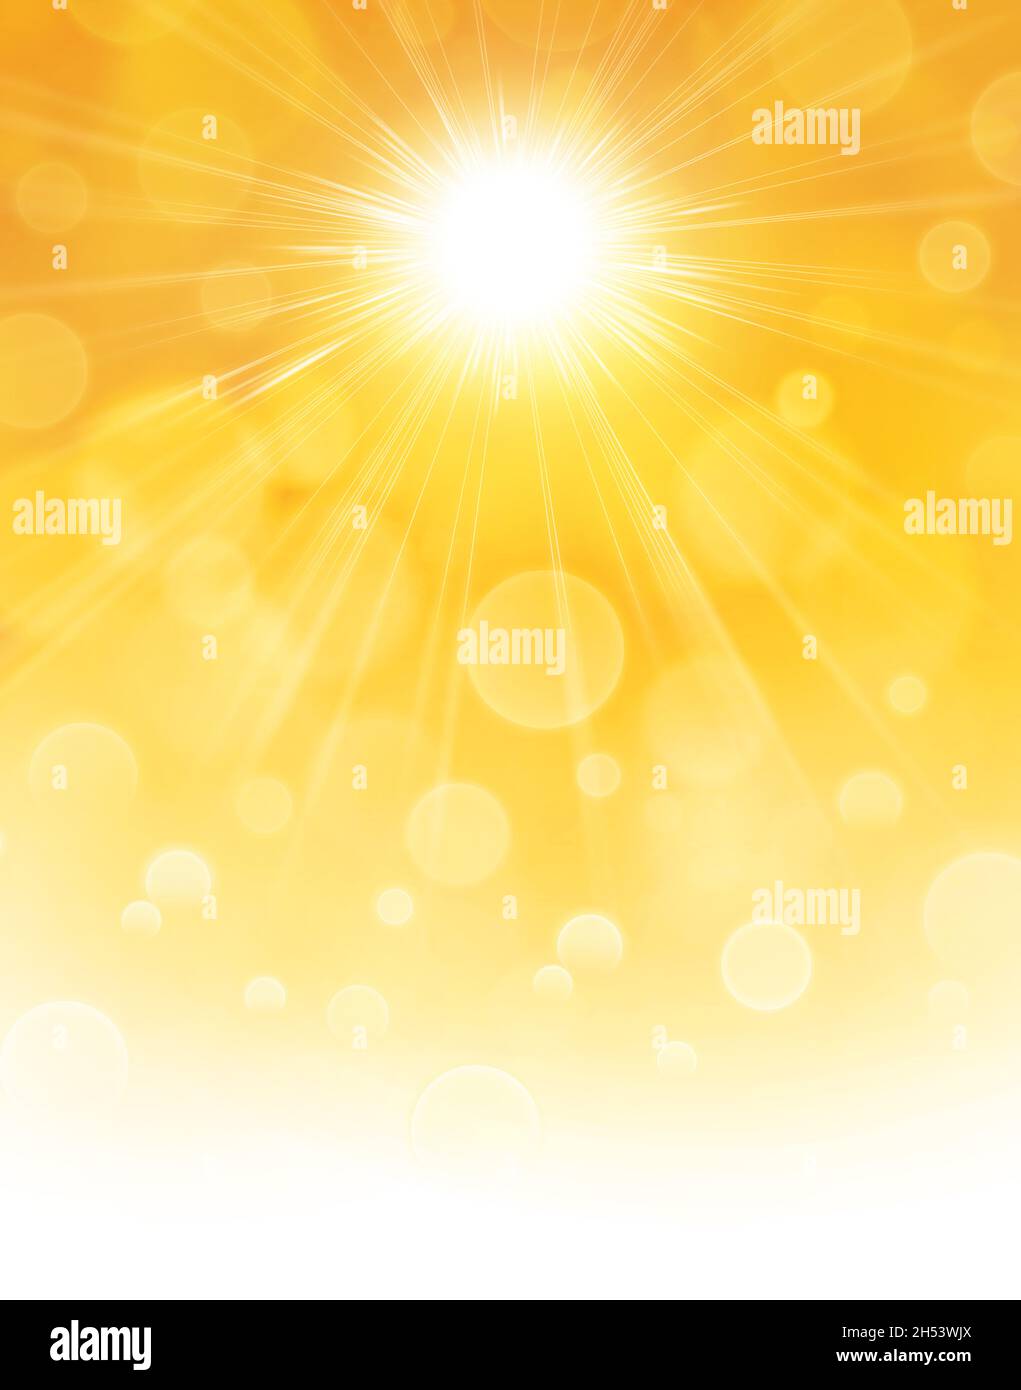 Sonnenstrahlen auf orangefarbenem und gelbem abstraktem Hintergrund. Ambiance Illustration von Sonnenenergie und Hitzewellen im Sommer. Stockfoto